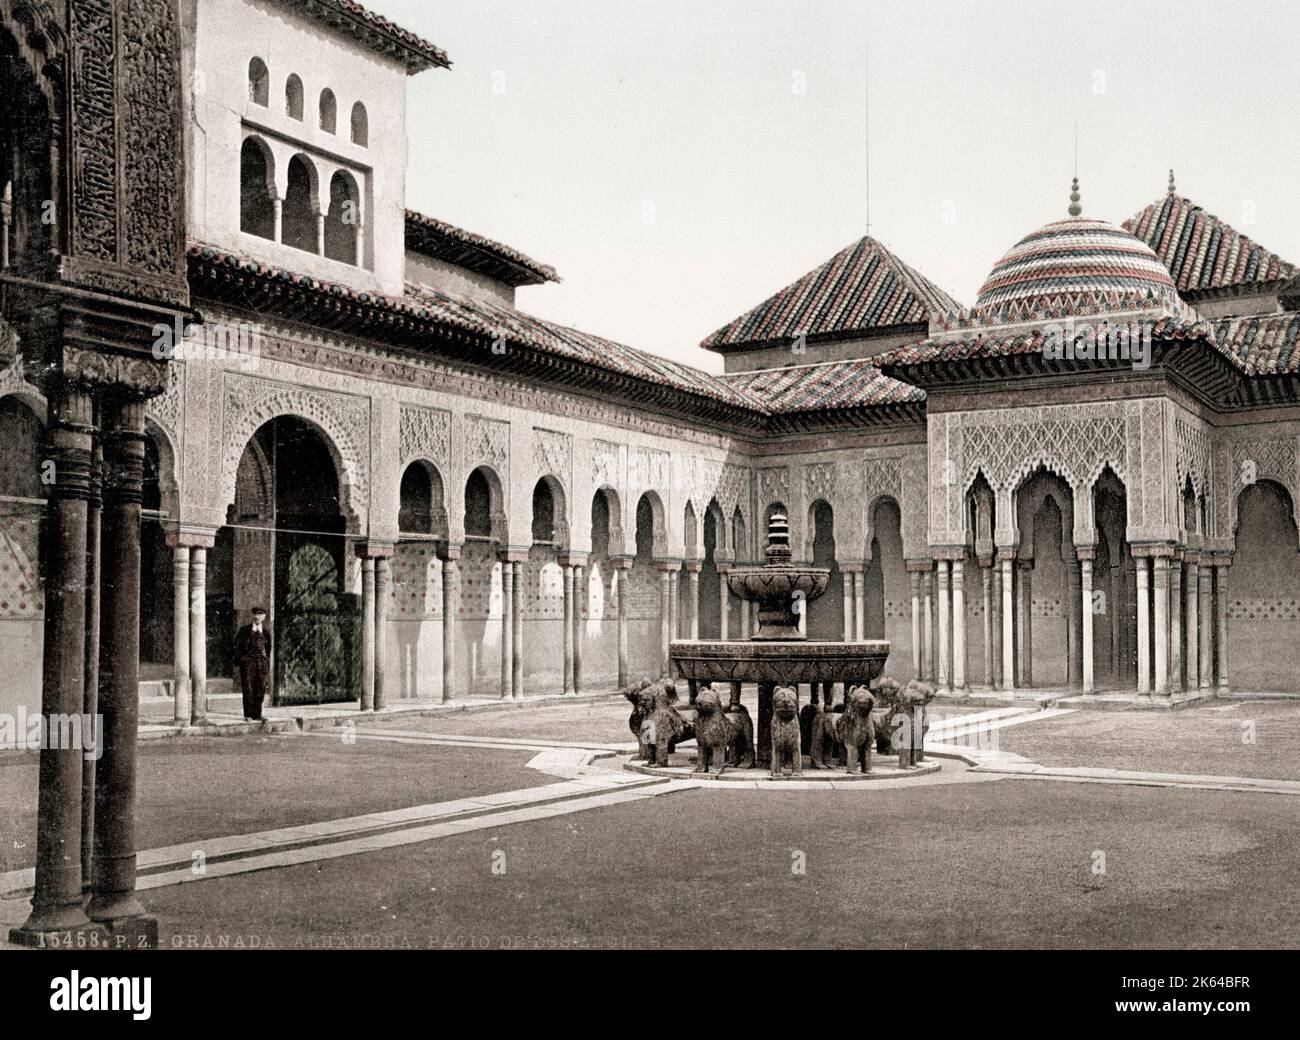 Photographie vintage vers 1900 : Palais de l'Alhambra, Grenade, Espagne, le patio des Lions (patio de los Leones). Banque D'Images